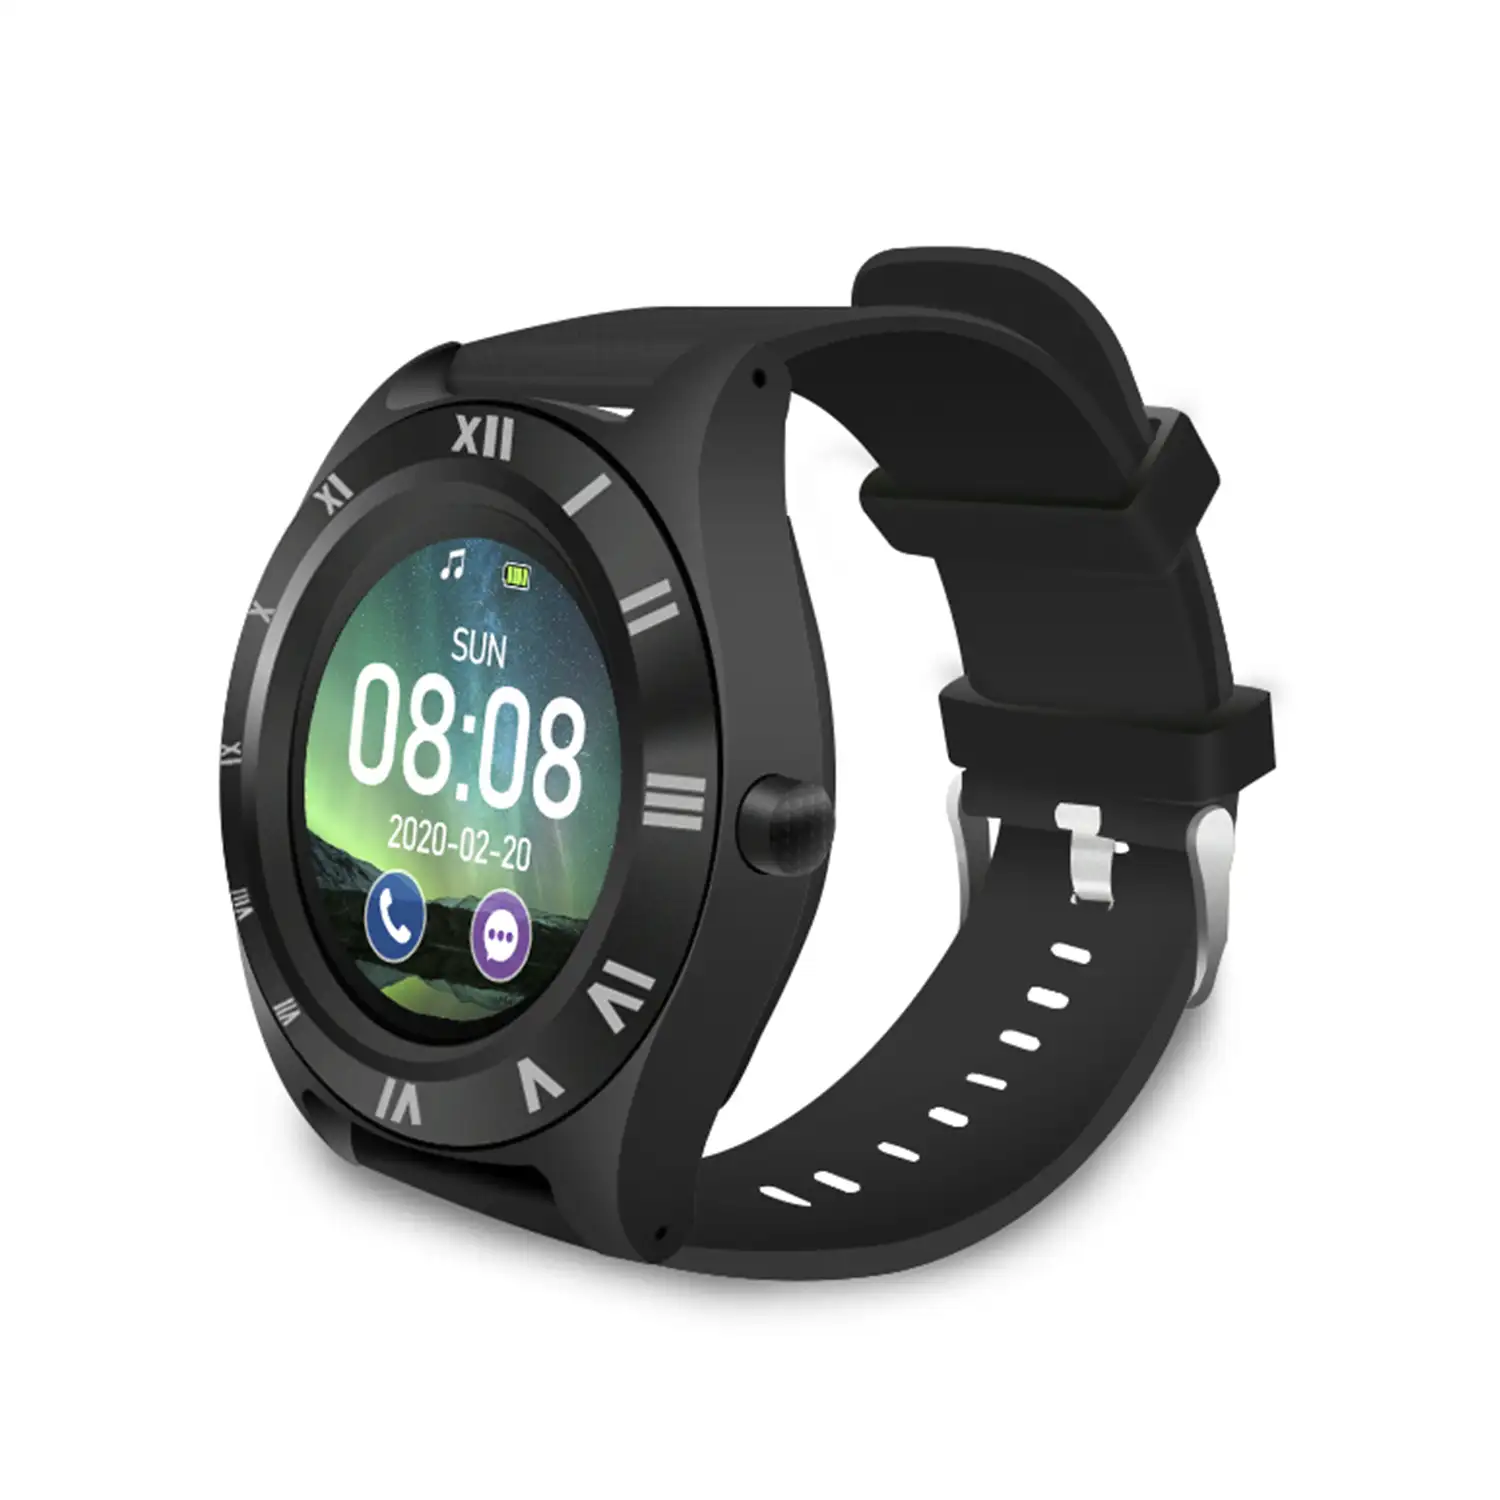 Smartwatch M11 multifunción con cámara, podómetro, aviso de llamadas, notificaciones. App para Android. Opción de SIM y micro SD.